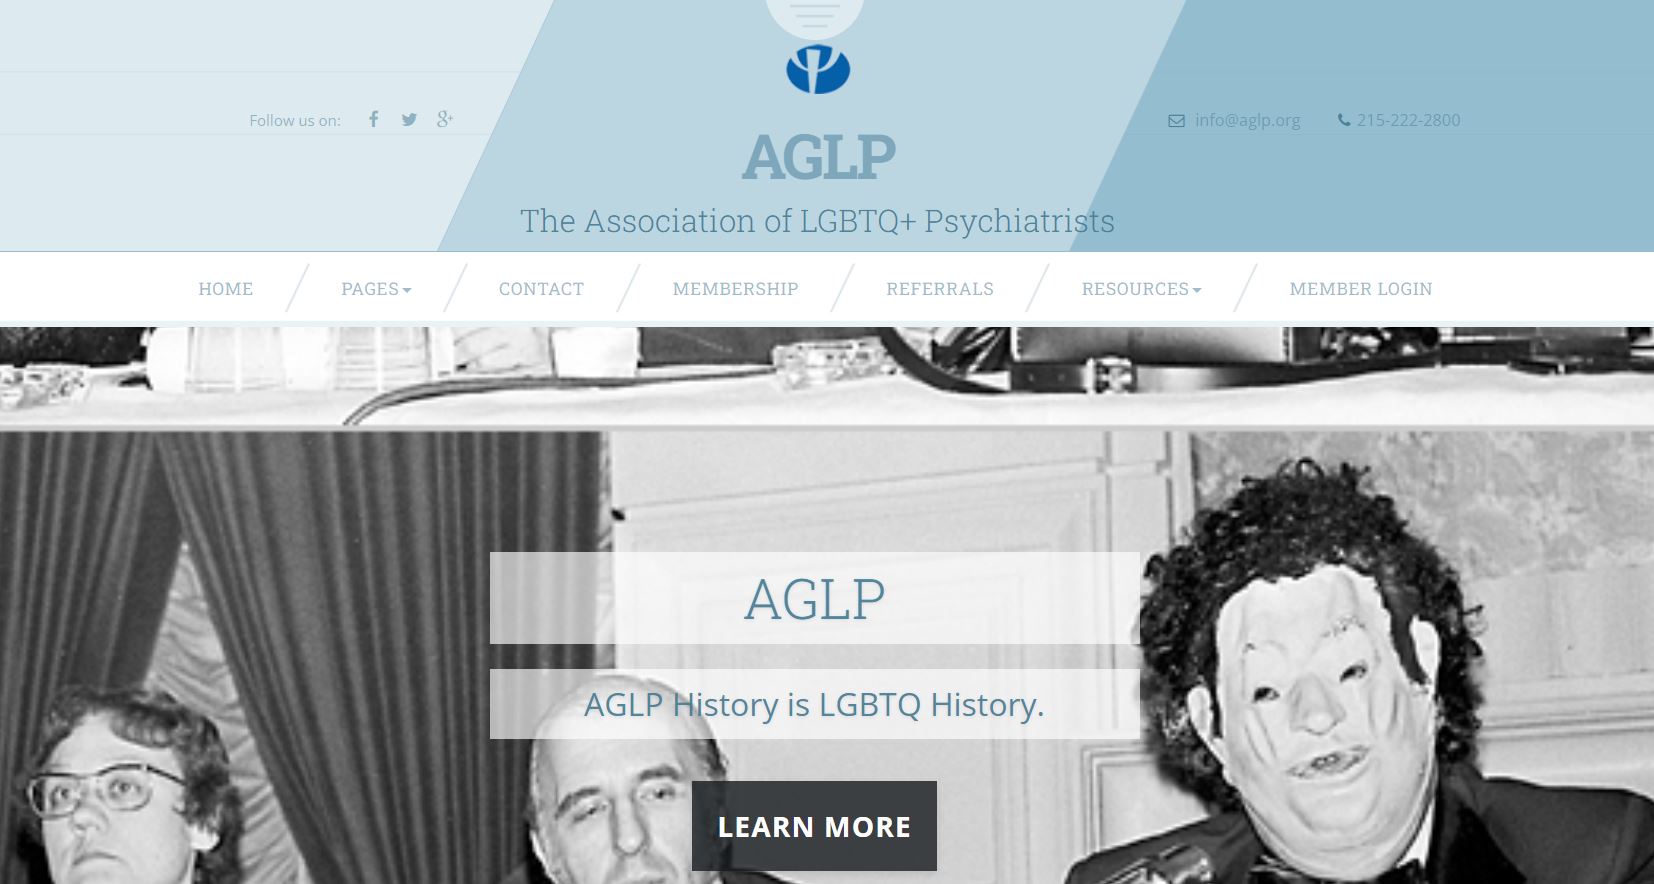 The Association of LGBTQ+ Psychiatrists: